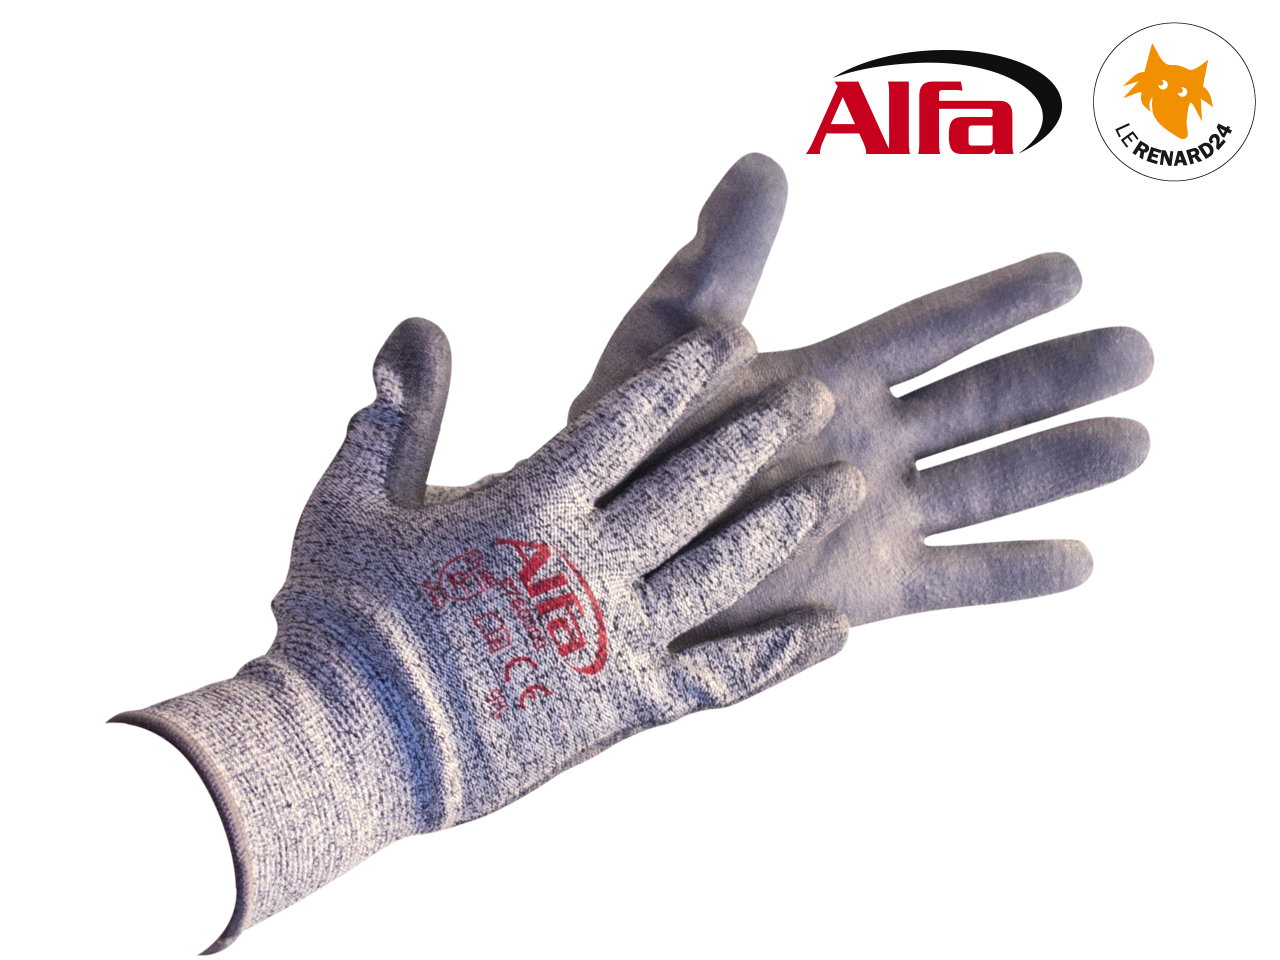 Gant de travail de protection anti coupures en nitrile - ALFA 874